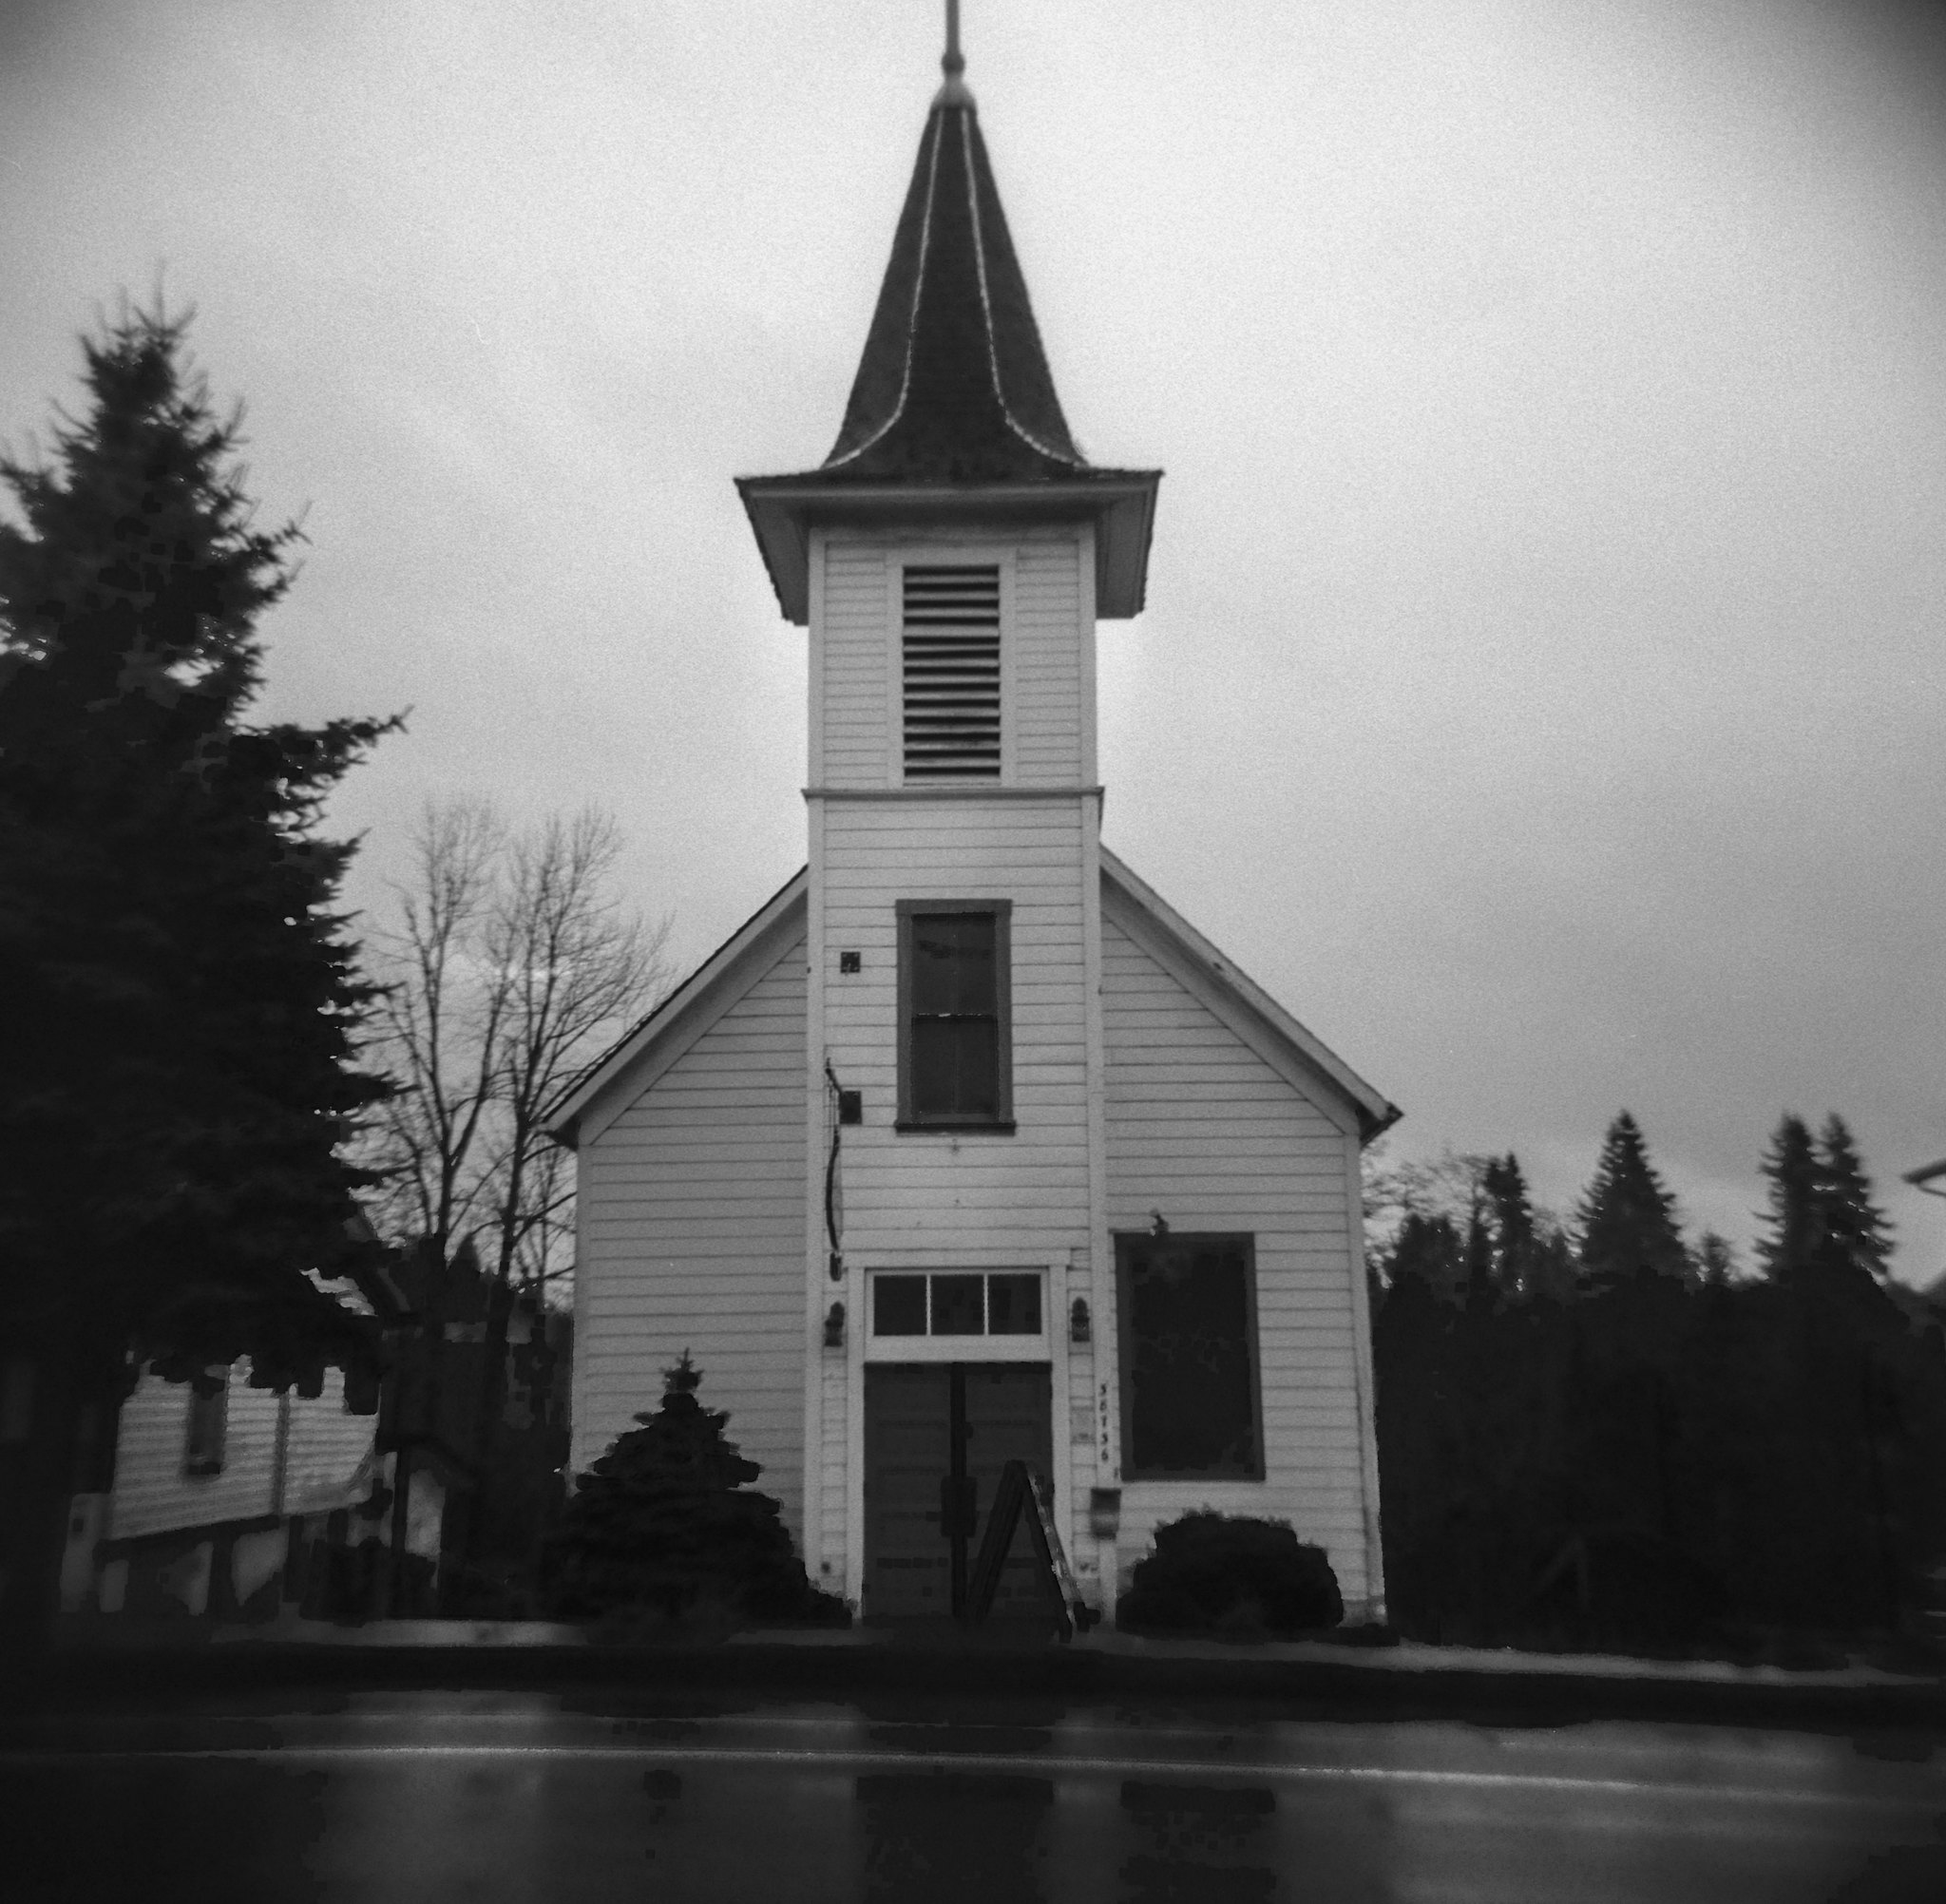 The little white church